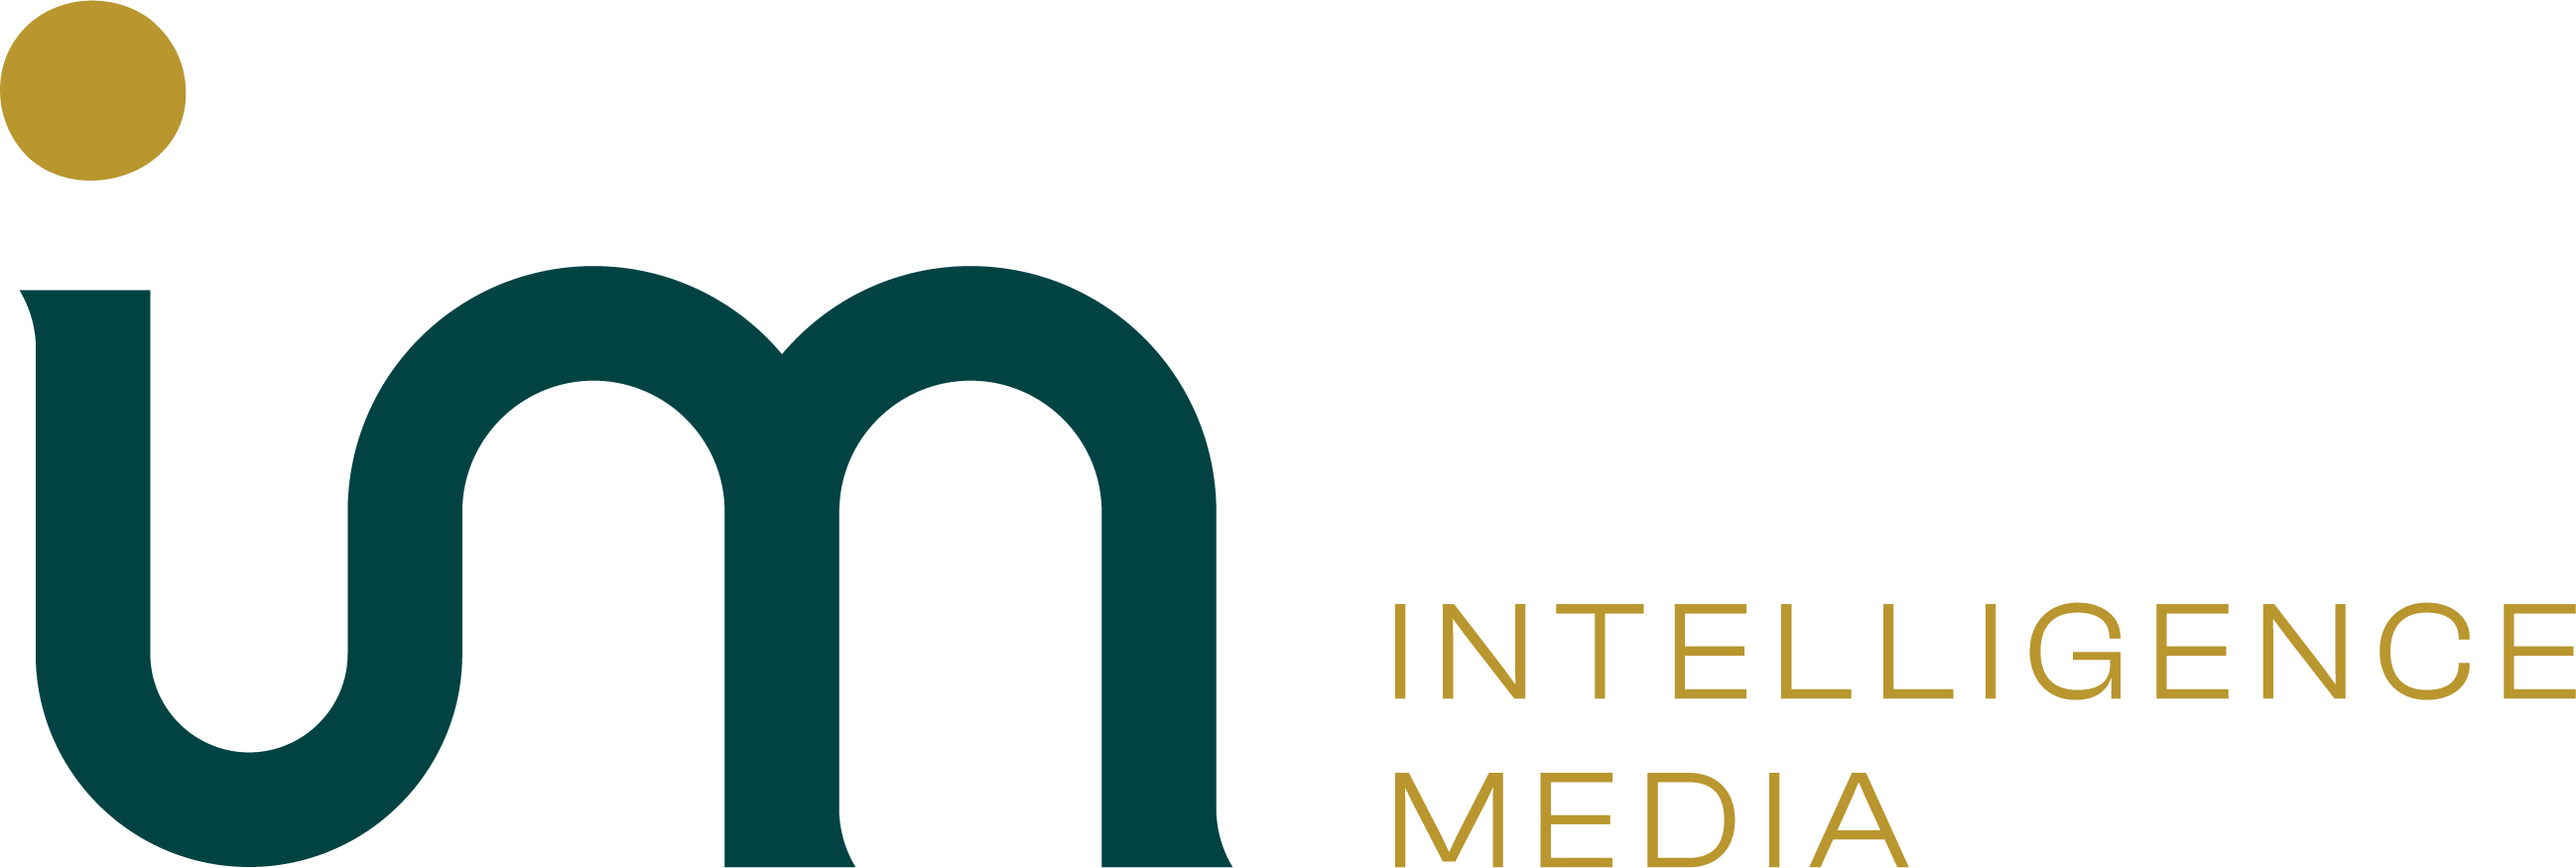 Intelligence Media - Ecommerce Marketing Agency (Logo)